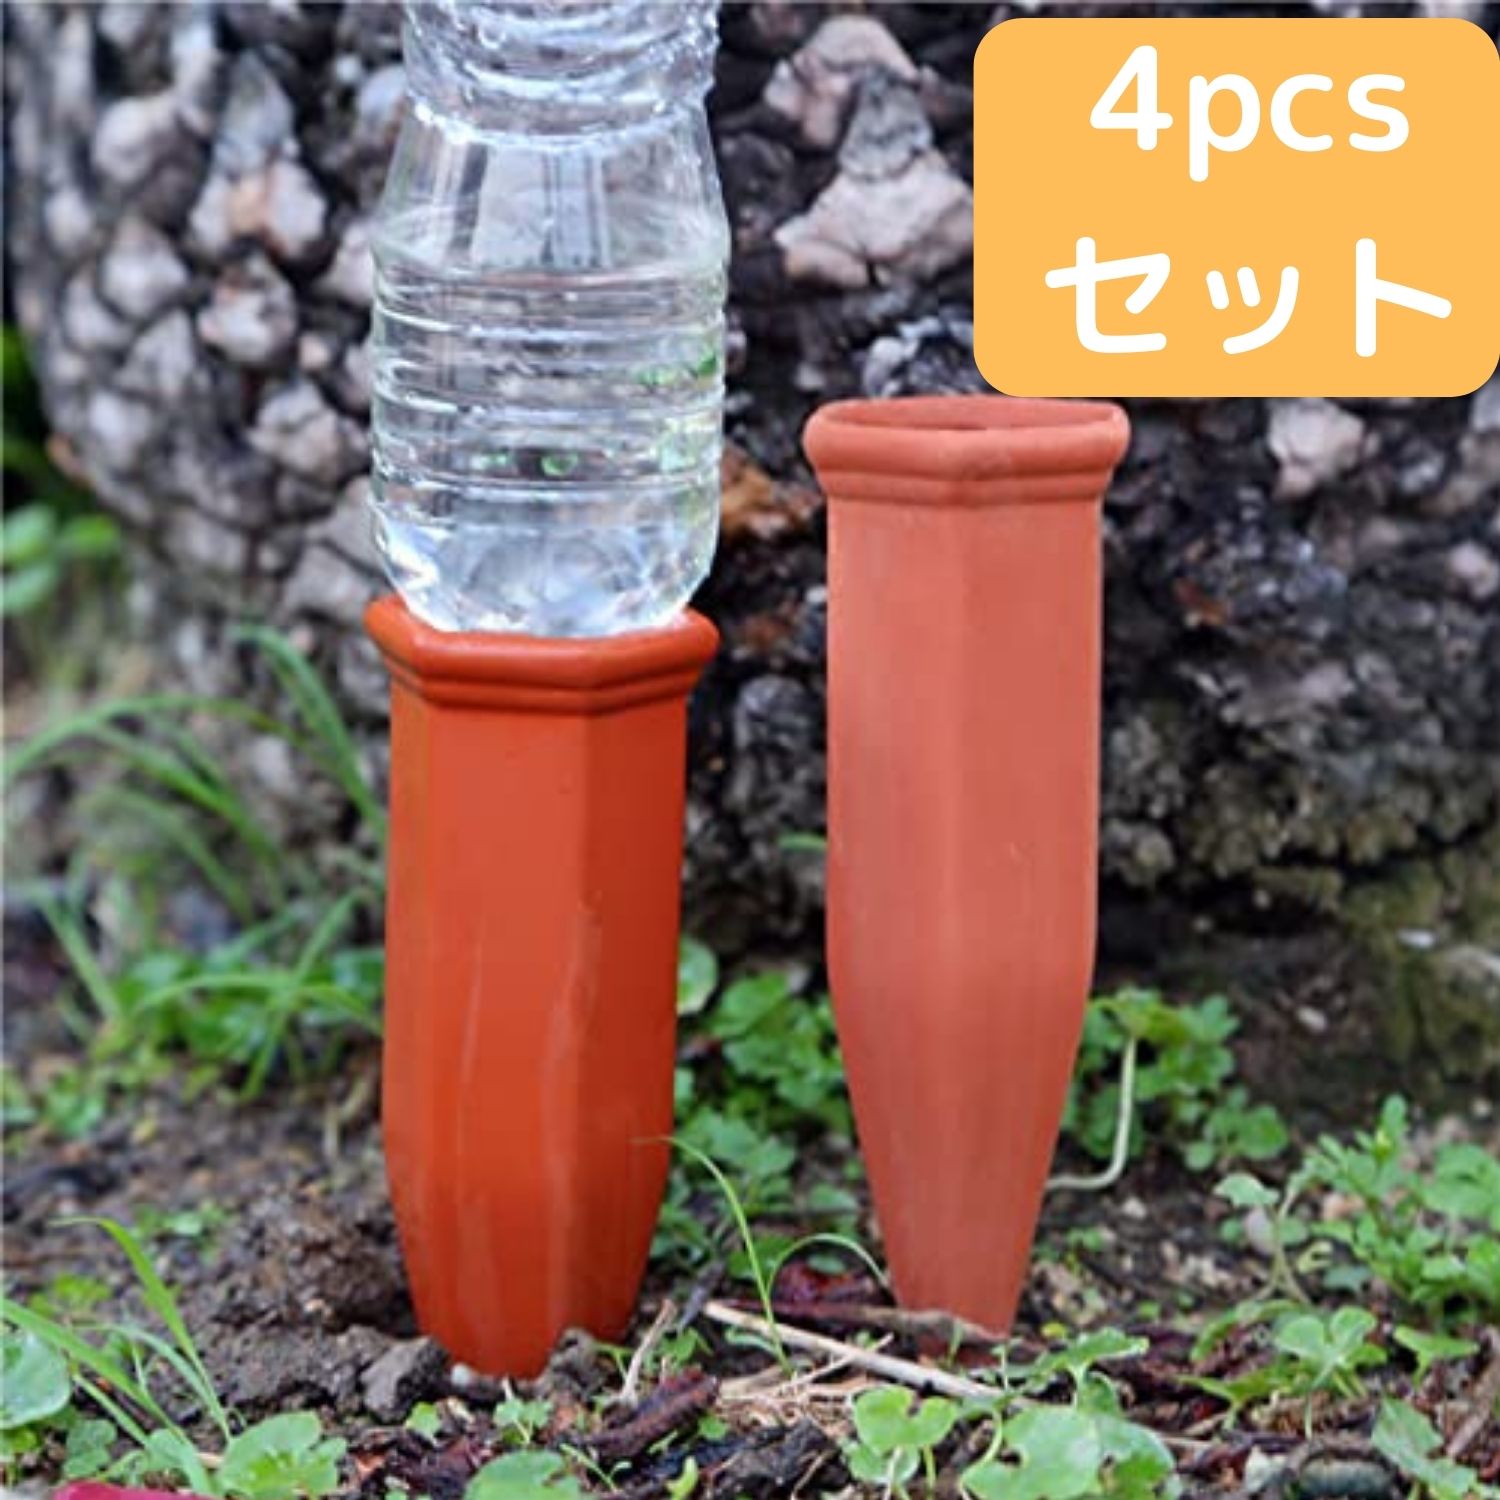 正規逆輸入品 自動水やり 4pcs 陶器 自動水やり器 観葉植物 園芸用品 プランター 水やり 留守 自動給水キャップ ペットボトル対応 繰り返し使用 ガーデニング用品 Toyama Nozai Co Jp